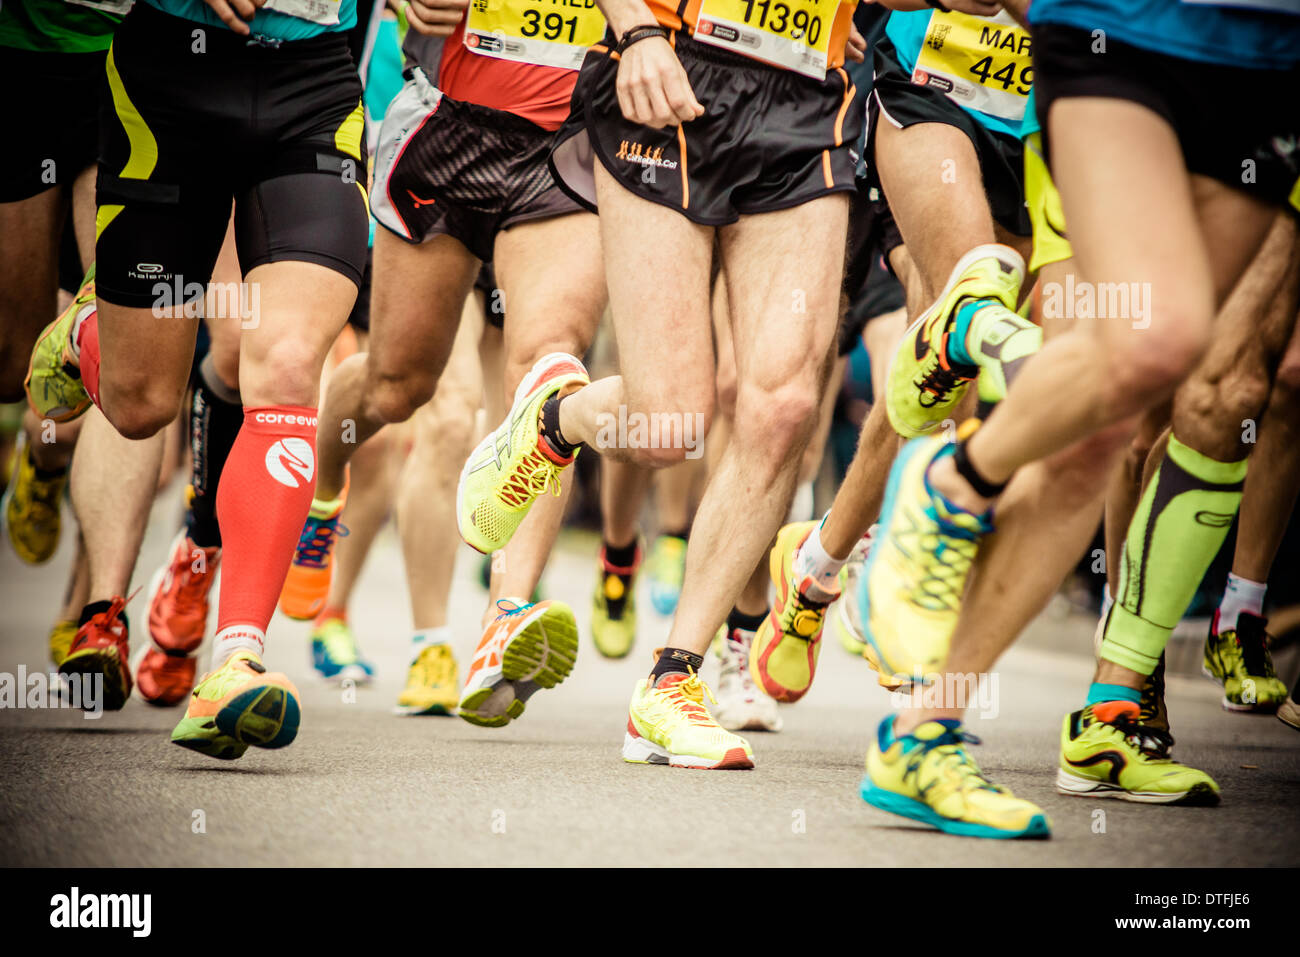 Barcelone, Espagne. 16 février 2014. Environ 14,000 : Ossature en compétition lors de la 24e édition du semi-marathon de Barcelone © matthi/Alamy Live News Crédit : matthi/Alamy Live News Banque D'Images